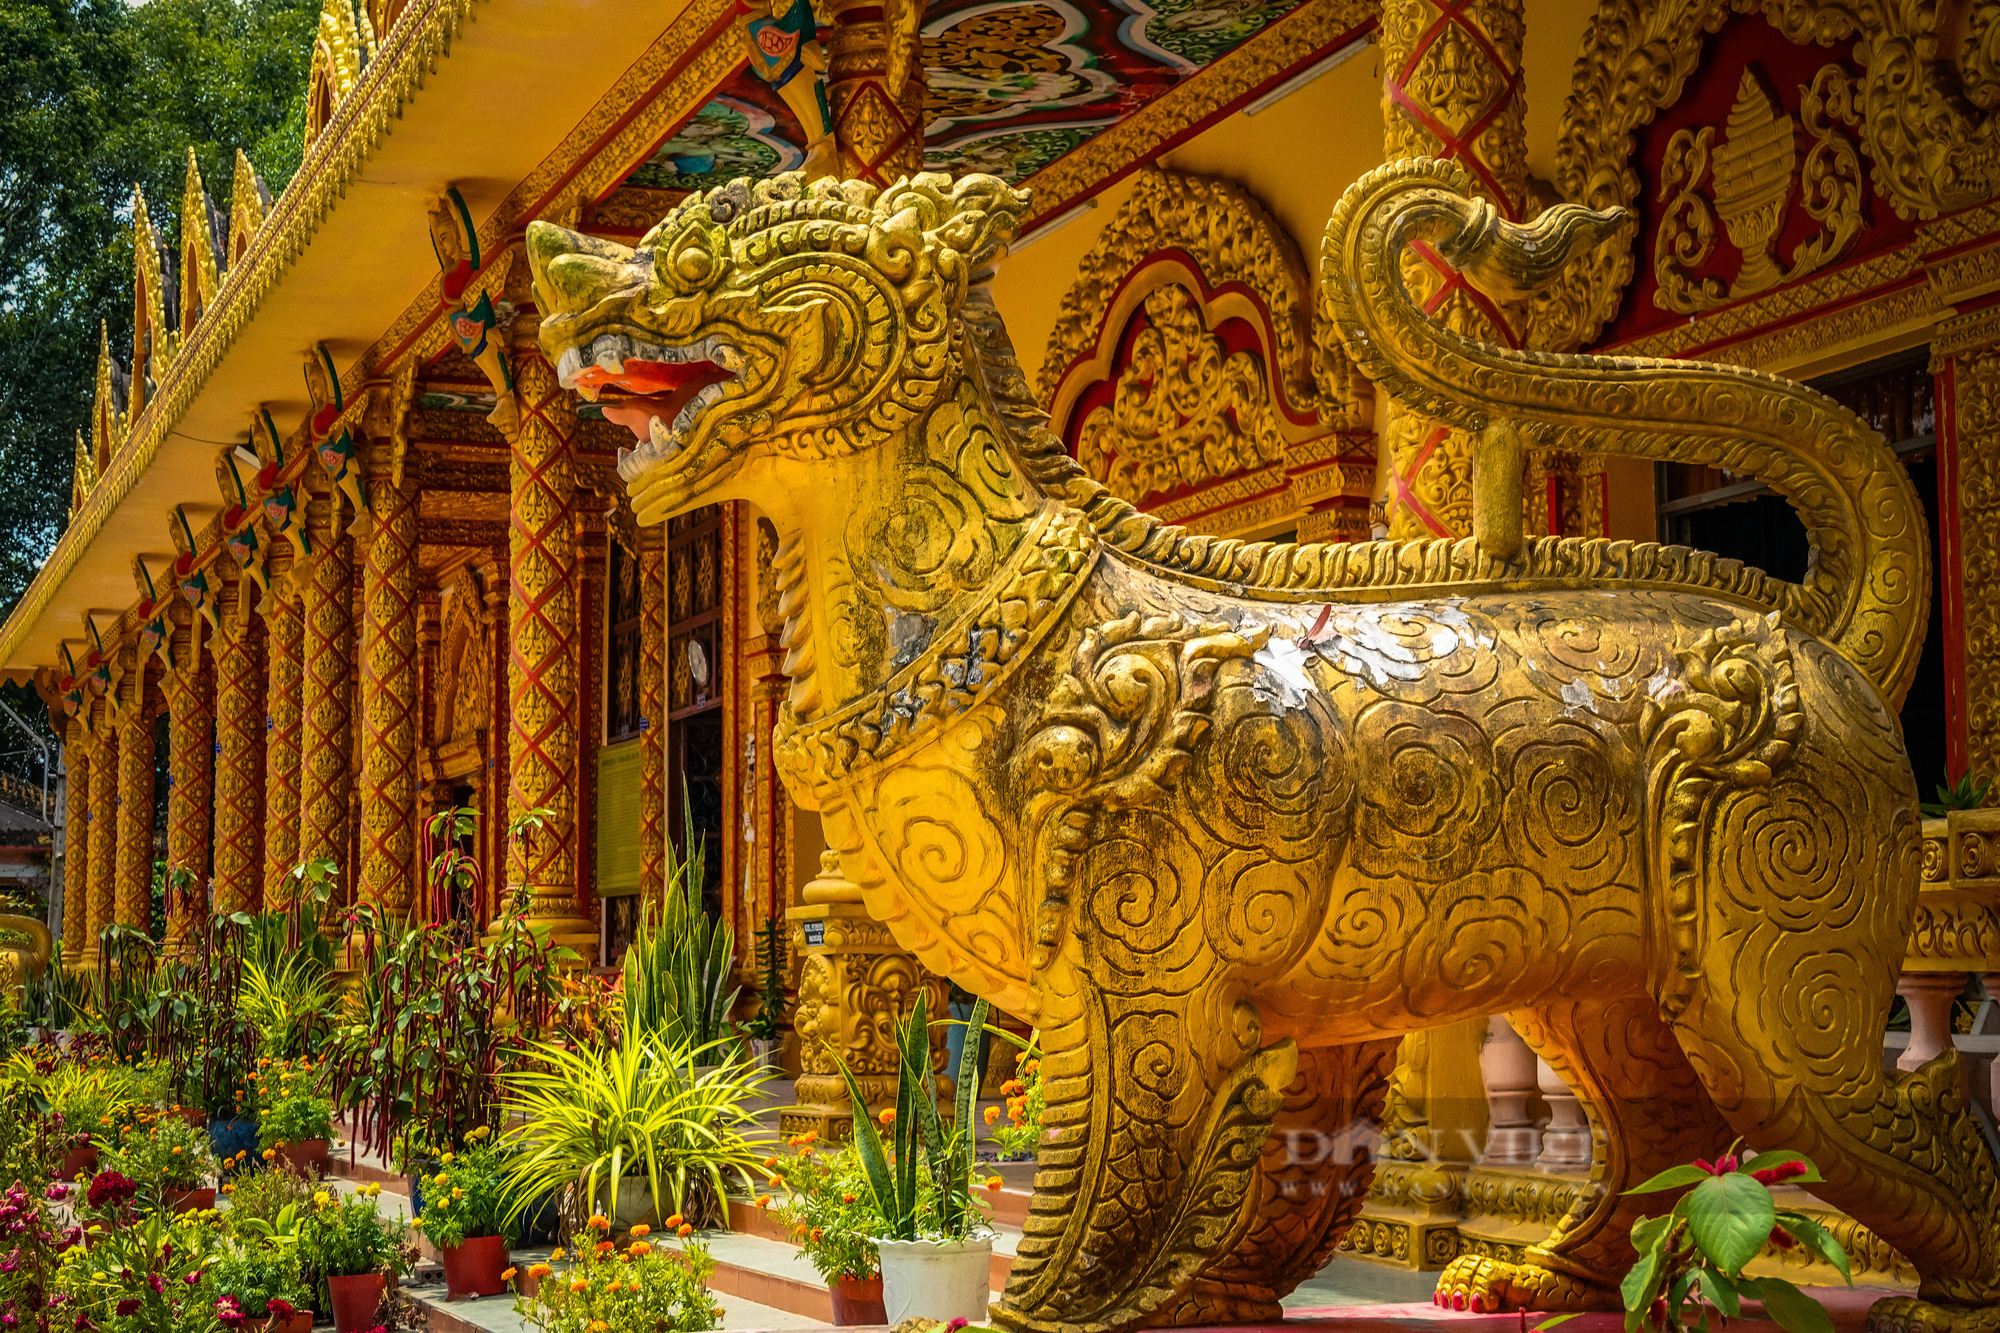 Ngôi chùa Khmer trăm năm tuổi với hàng trăm cây sao cổ thụ “độc” nhất Sóc Trăng - Ảnh 8.